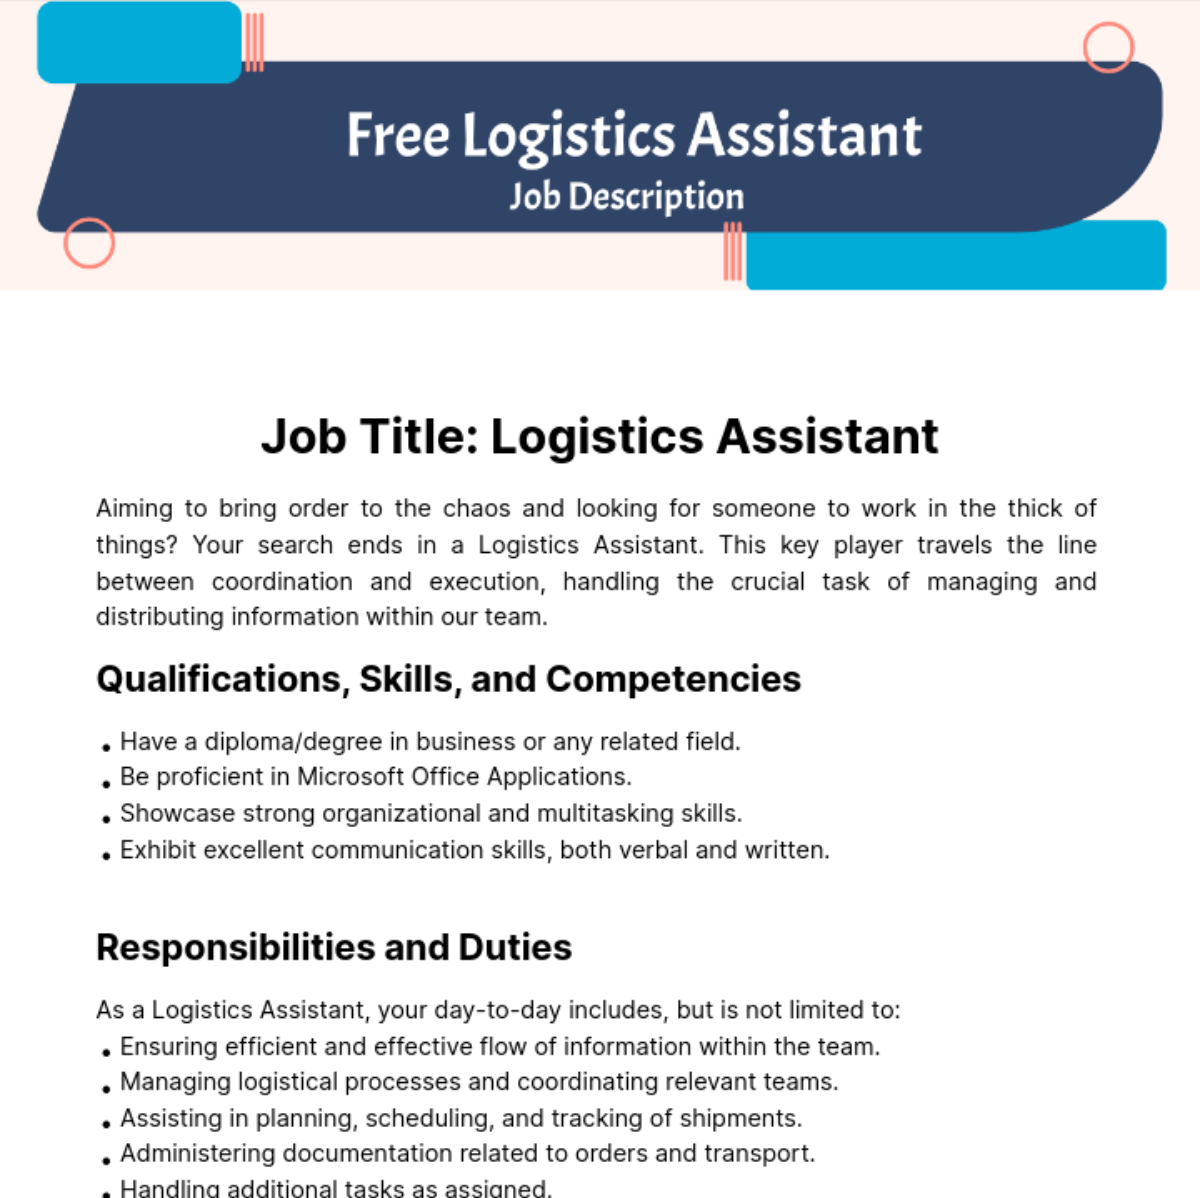 Free Logistics Assistant Job Description Template